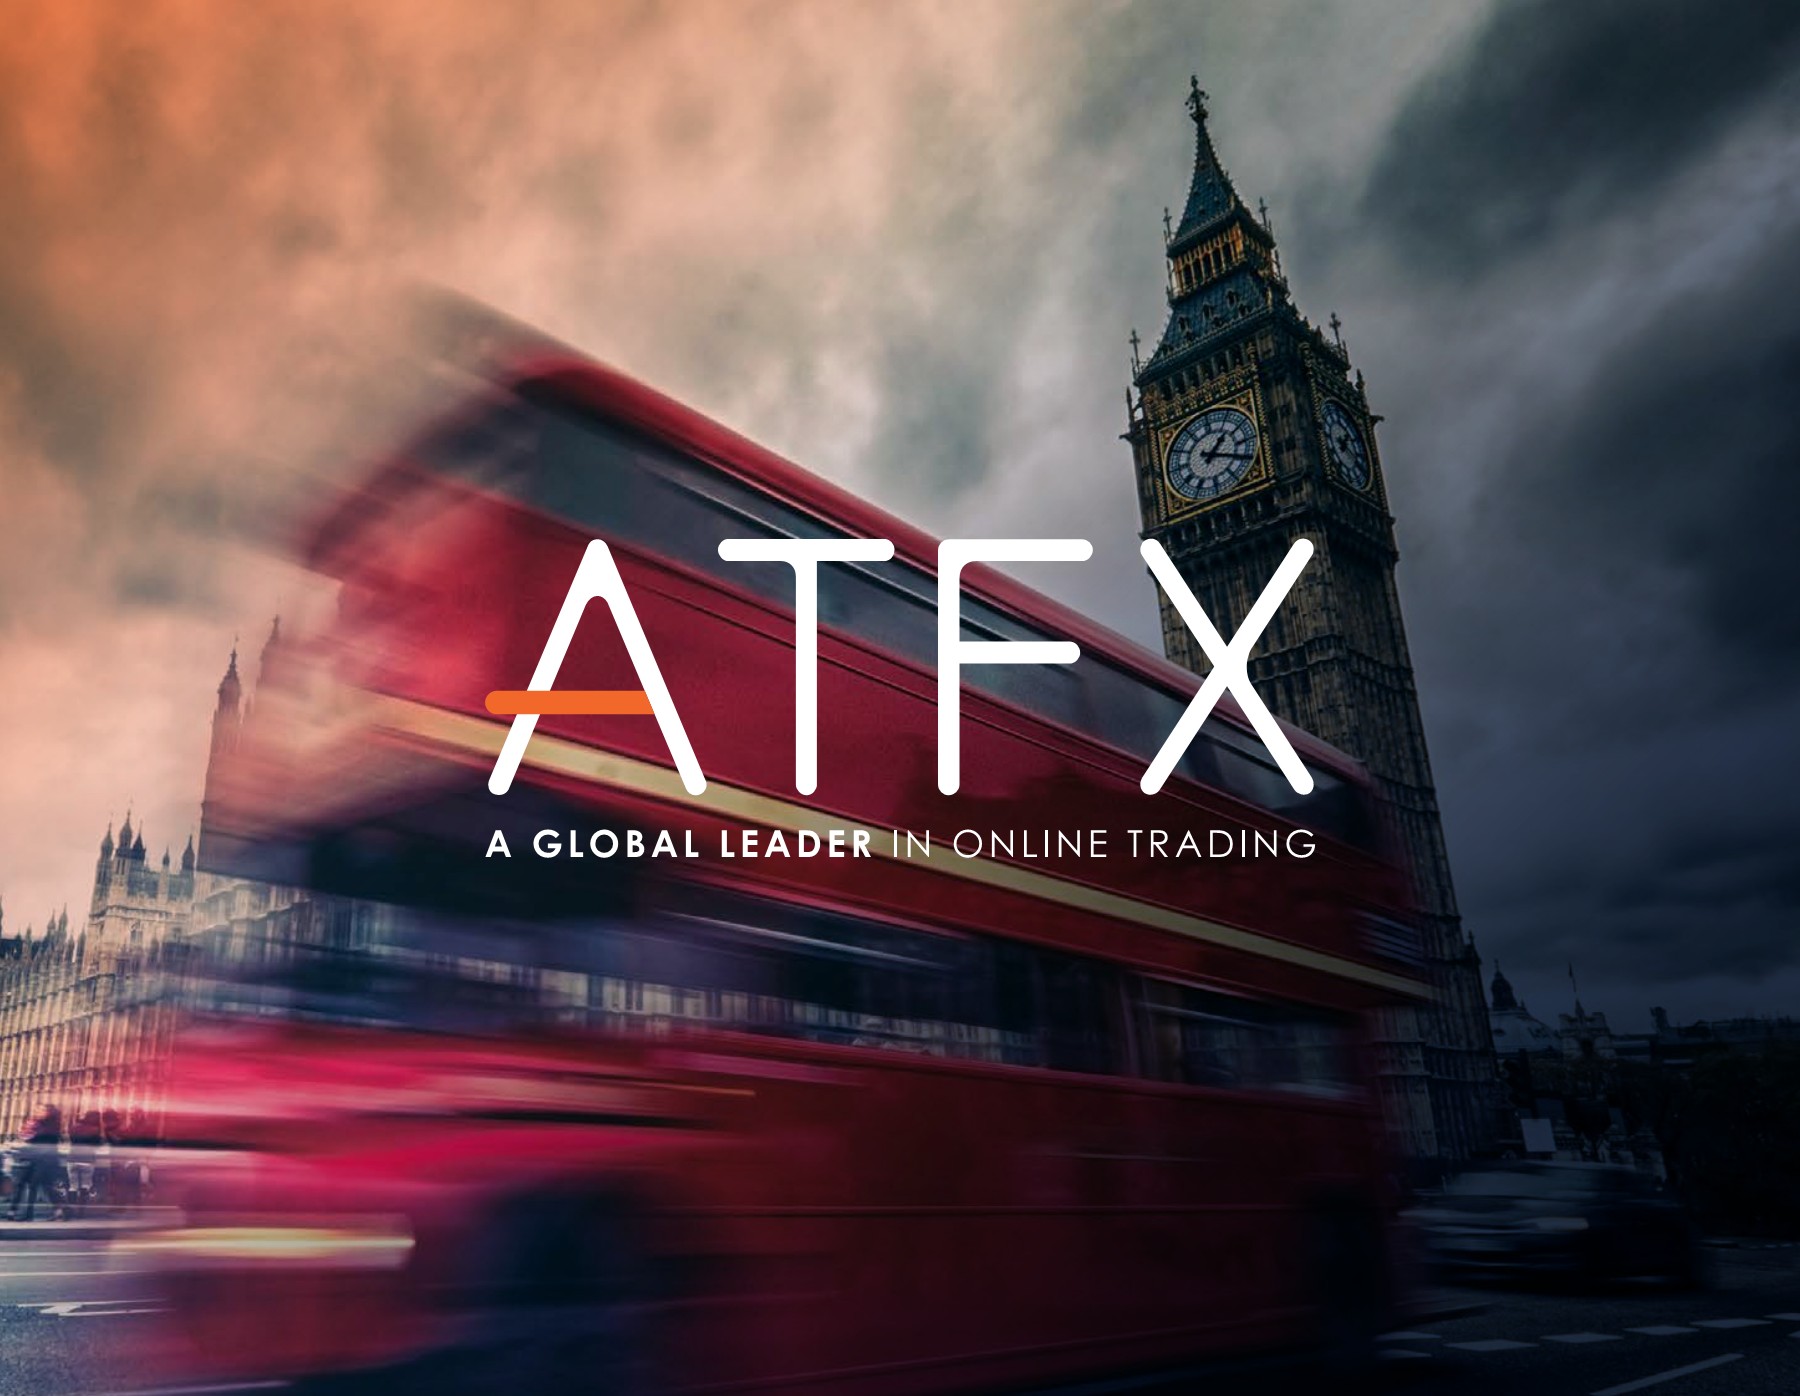 شركة ATFX تحمل تراخيص متعددة مشهورة عالمياً